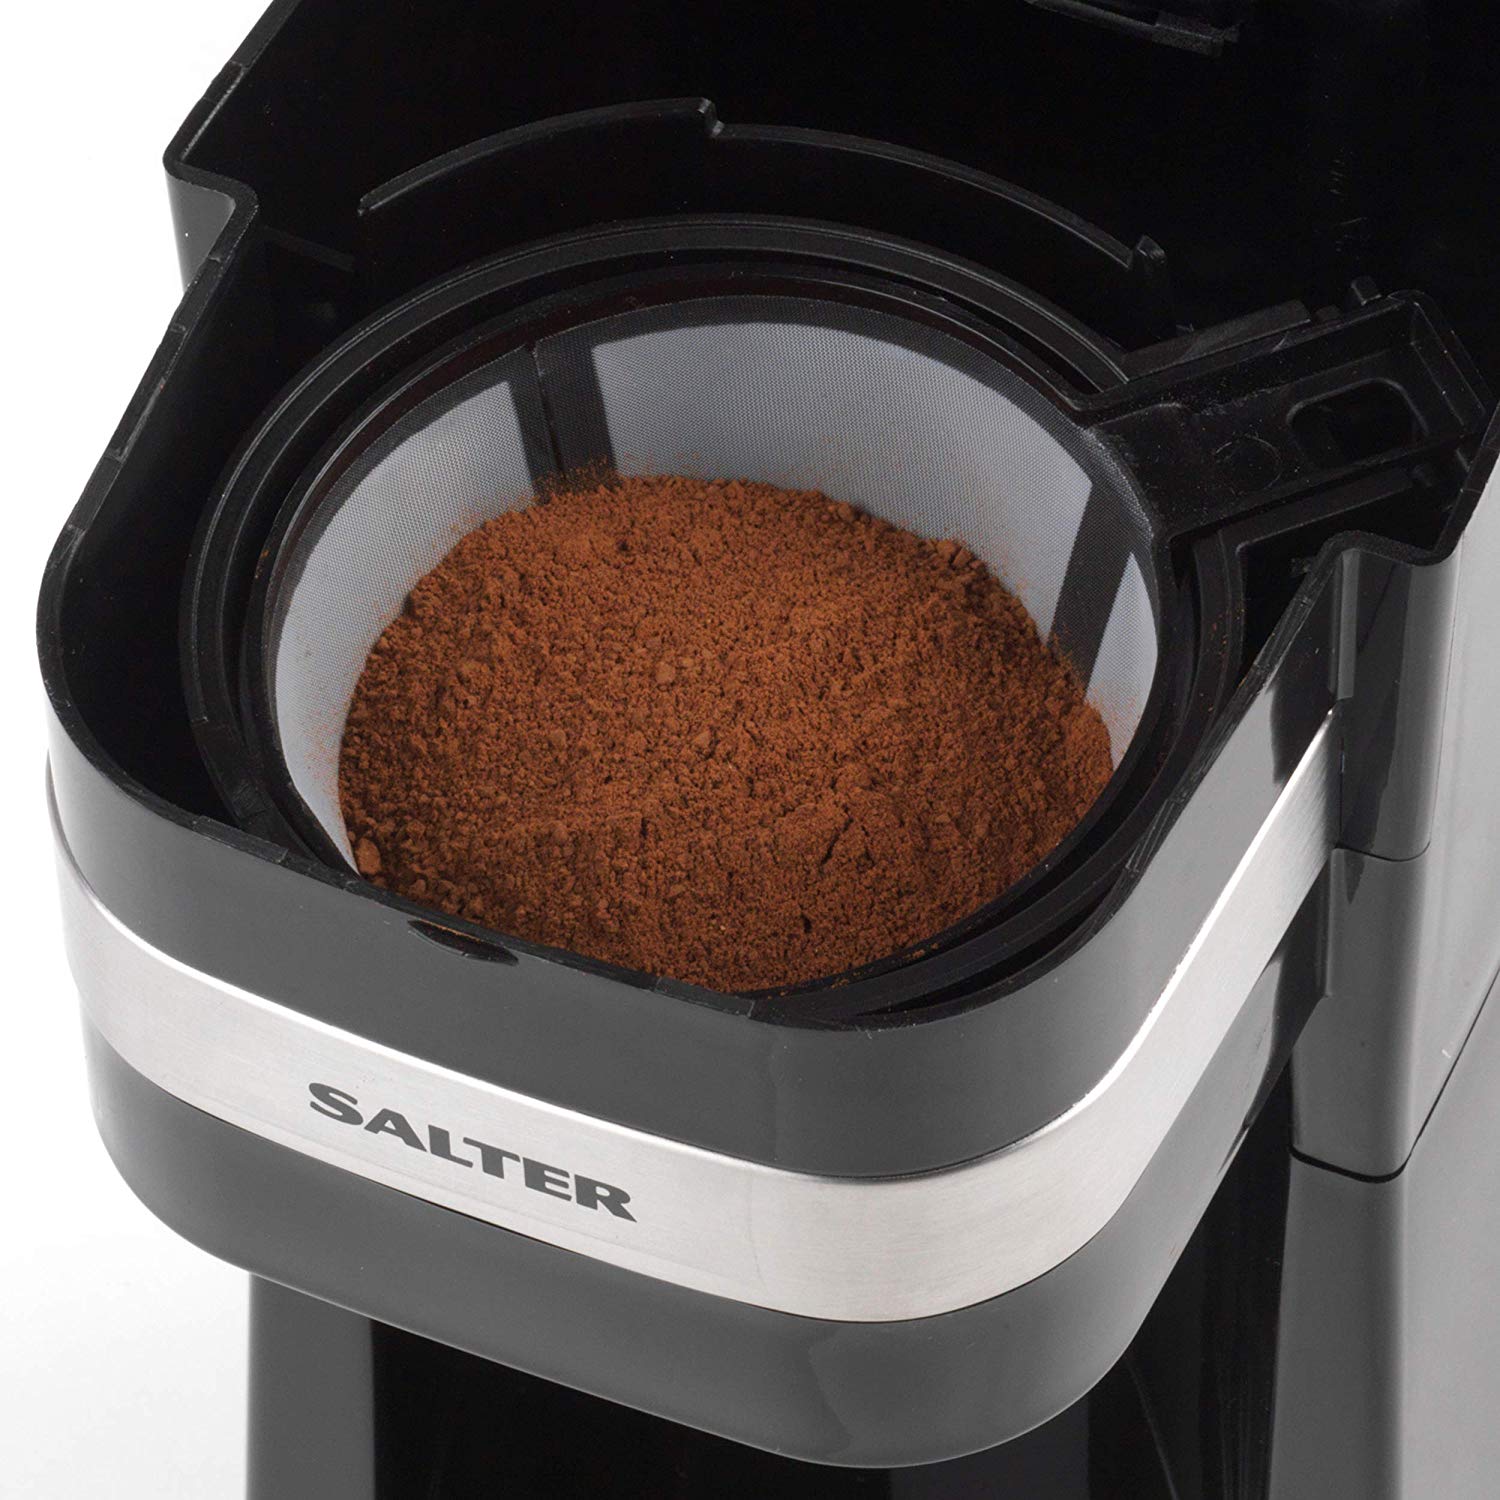 Salter Coffee Maker To Go - Bonnypack